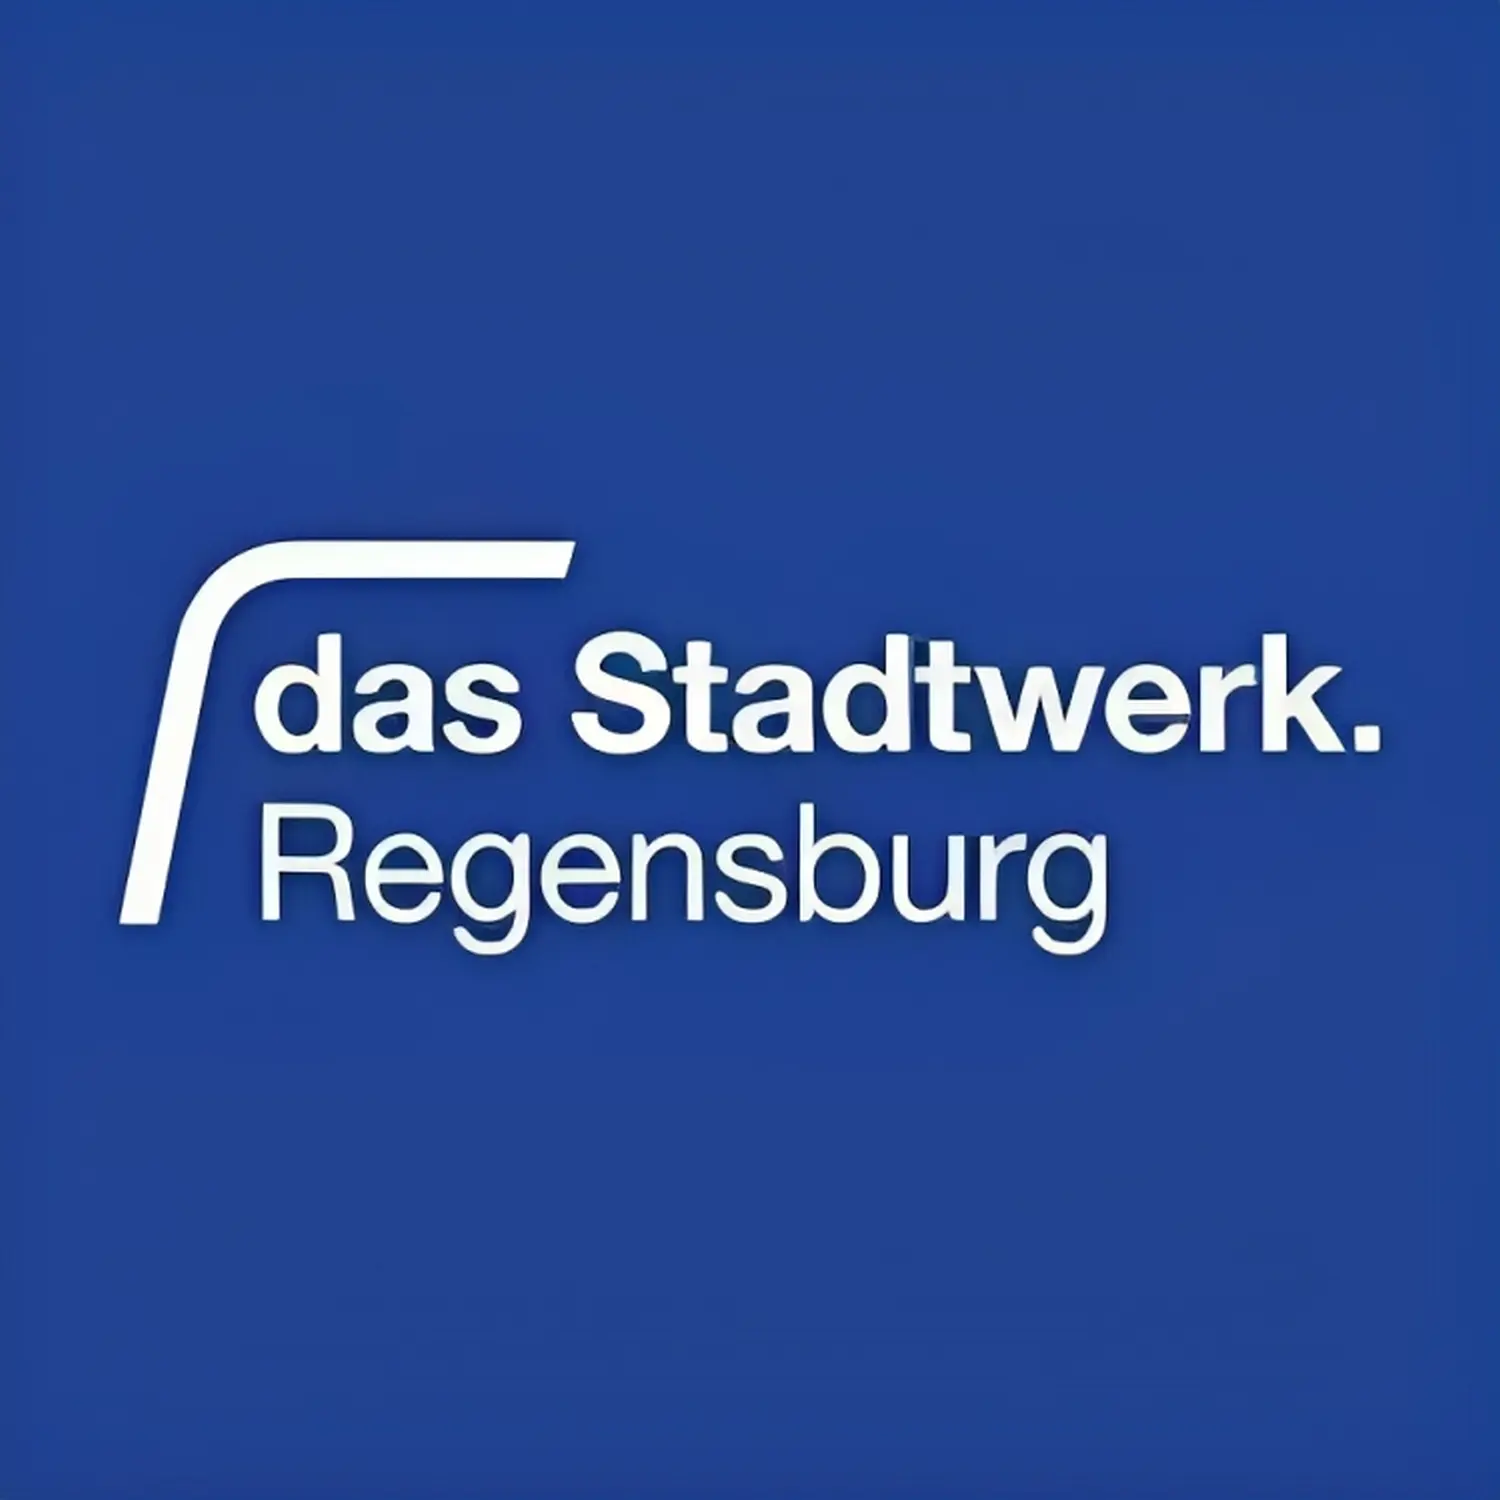 Das Stadtwerk RegensburgJahnstadion